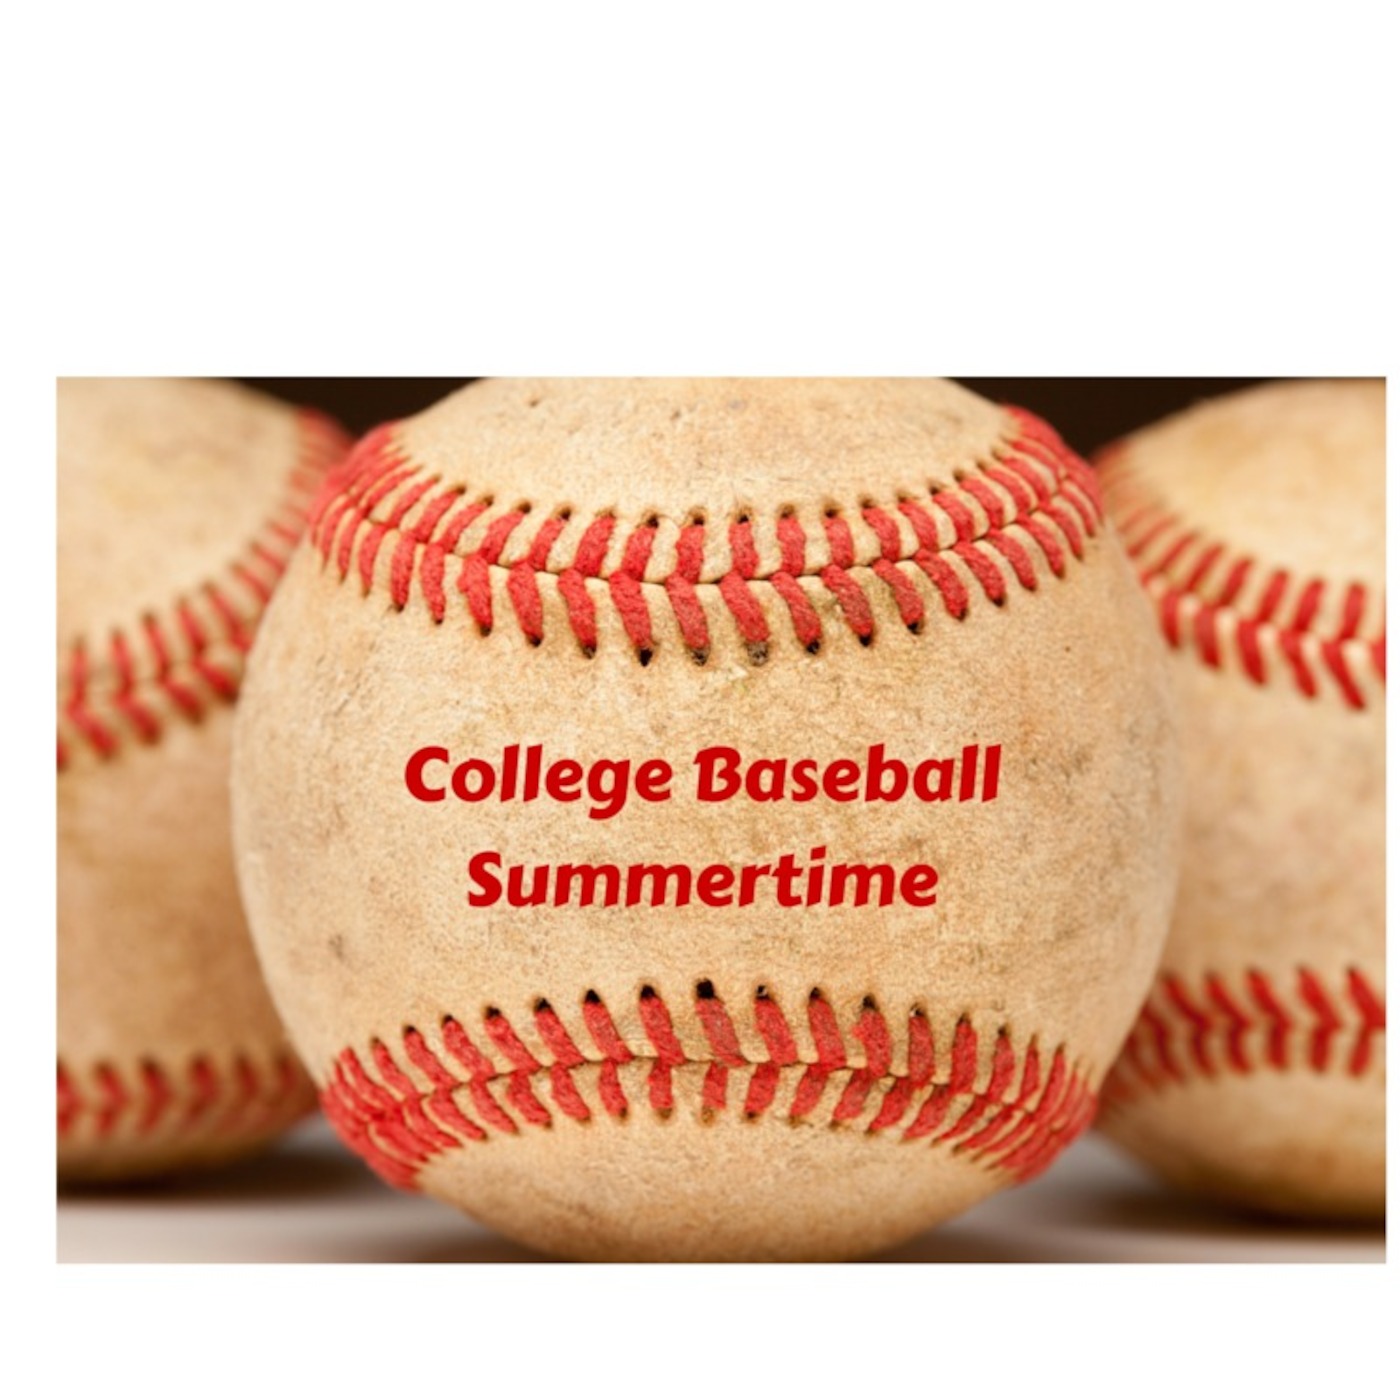 College Baseball Summertime